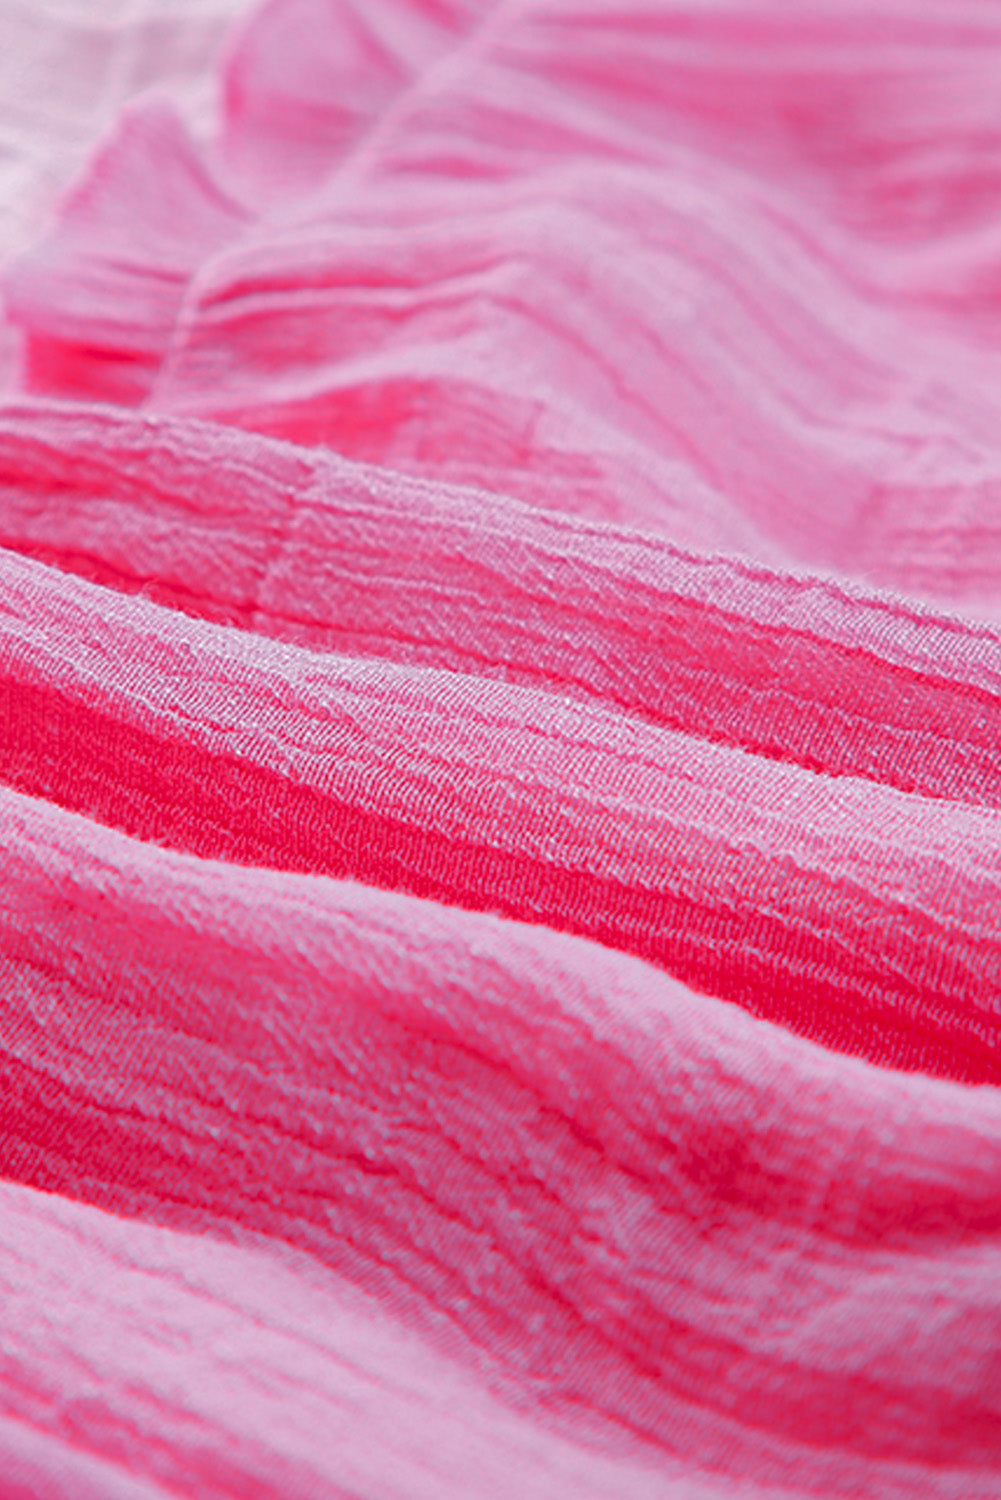 Robe à plusieurs niveaux en blocs de couleurs ombrés rose